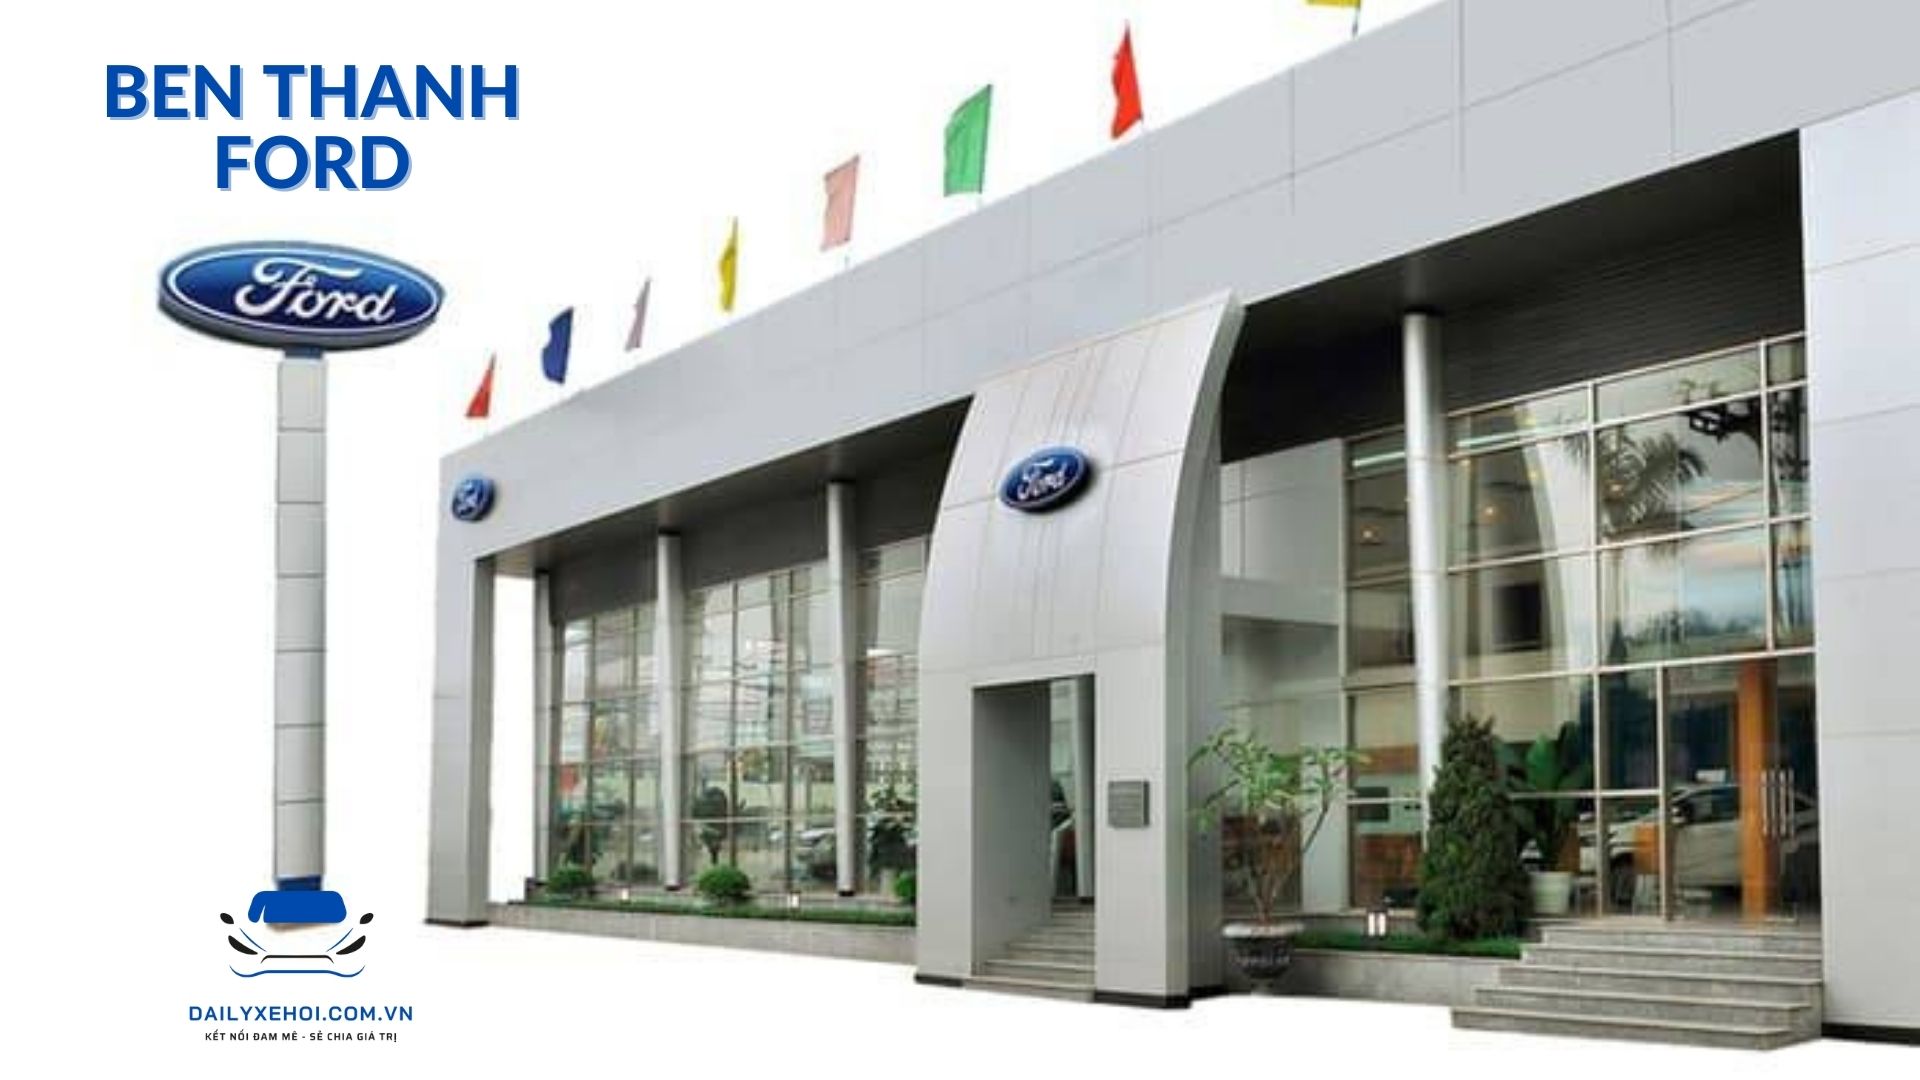 Khai trương Bến Thành Ford Đại lý đạt tiêu chuẩn toàn cầu Ford Signature   Trang Thông tin điện tử tổng hợp Thi đua  Khen thưởng